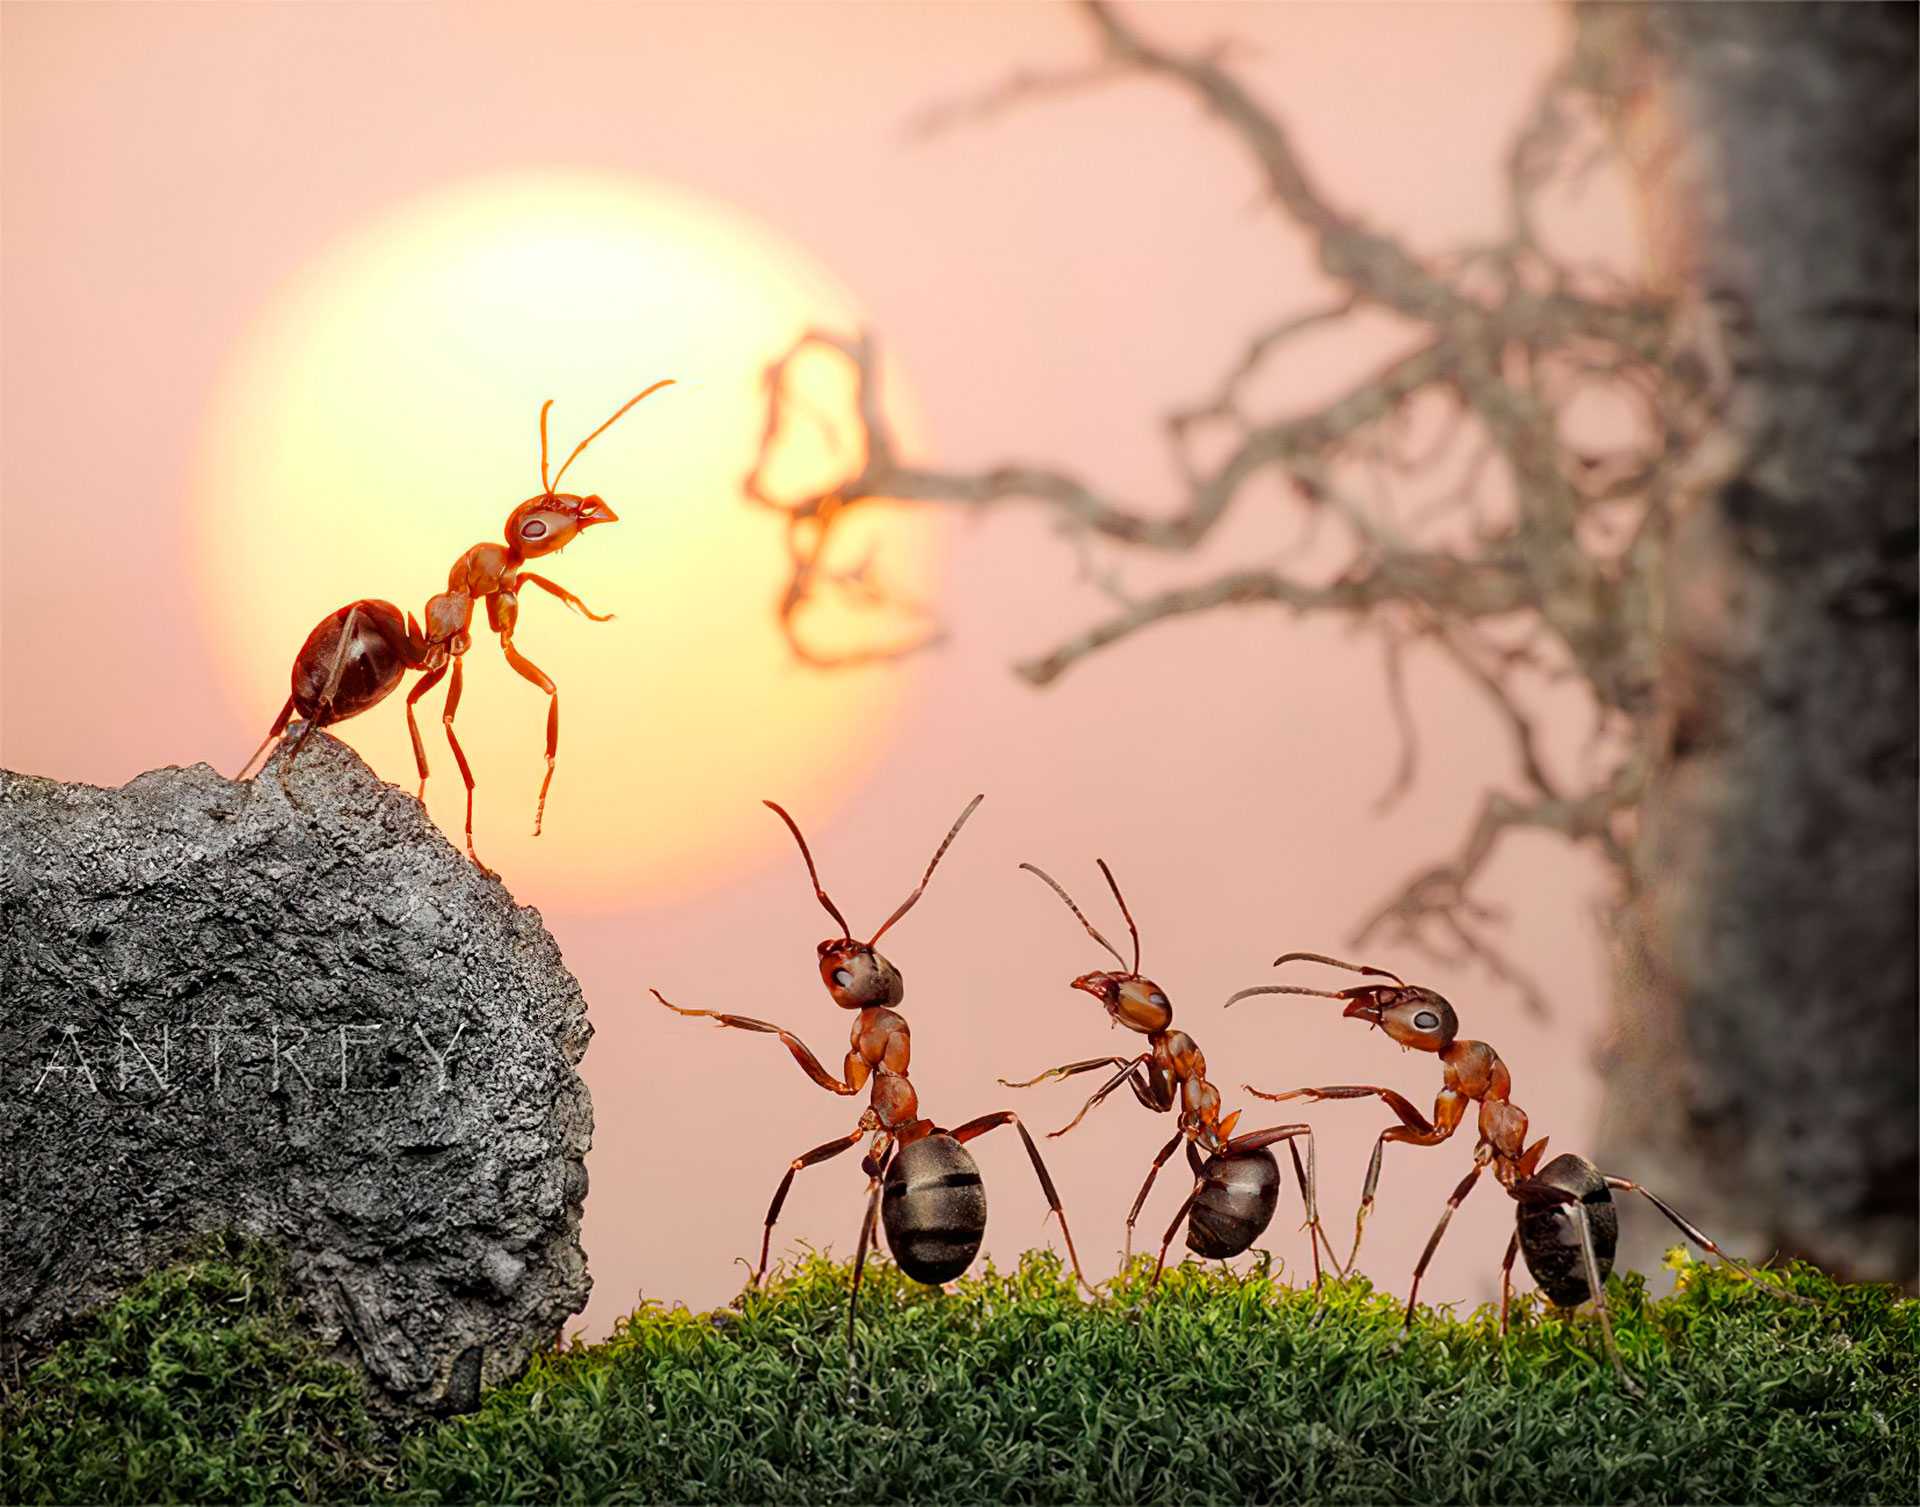 Эти удивительные муравьи — бороться или уживаться? описание, особенности жизни, как отпугнуть. фото — ботаничка